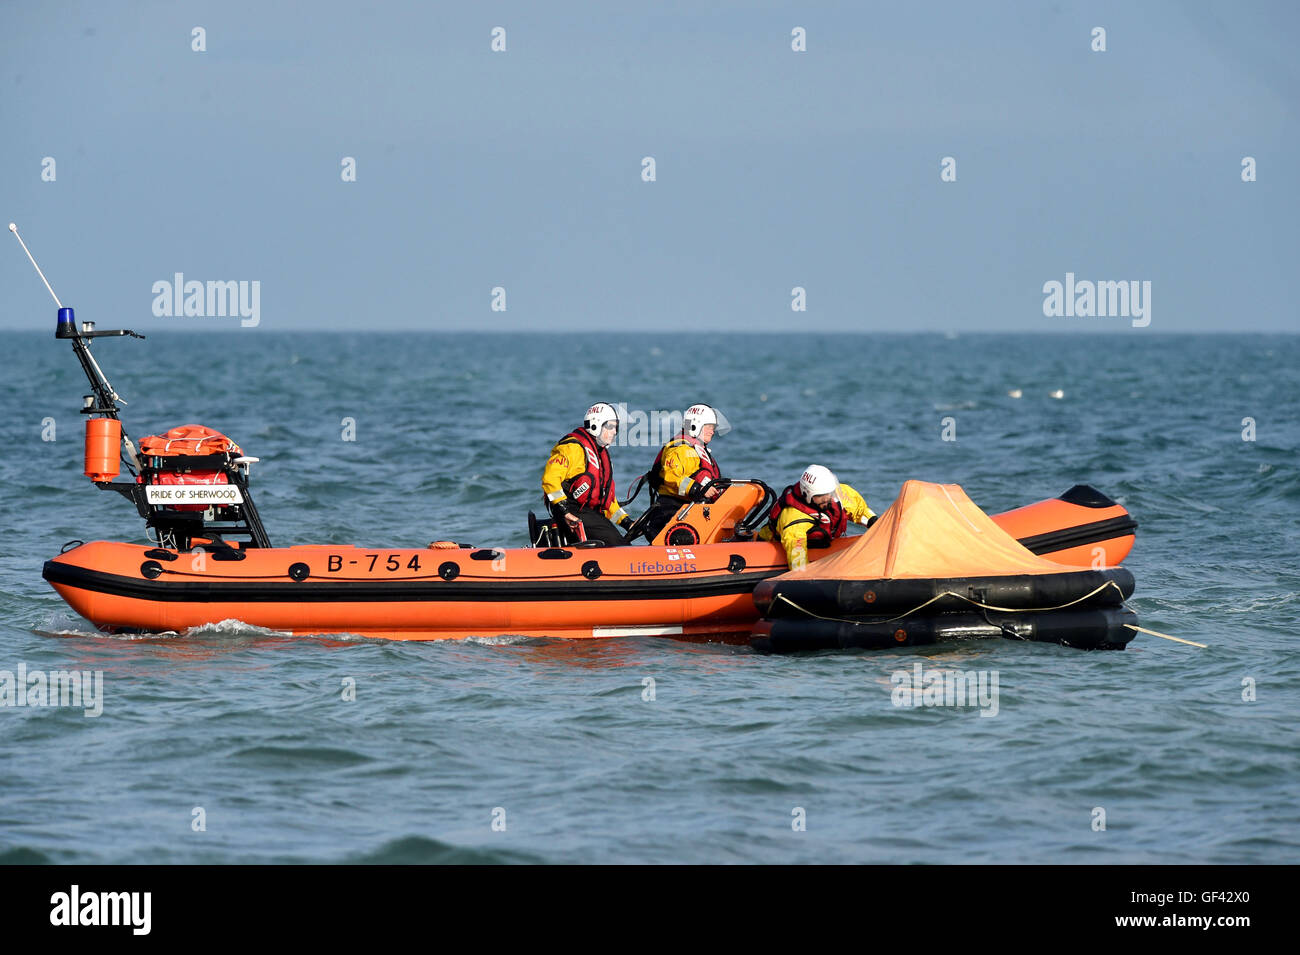 Rescate de guardacostas, Inshore Bote Salvavidas rescate de una persona de  una balsa salvavidas, guardacostas, rescate salvavidas RNLI "Semana" la  demostración, UK Fotografía de stock - Alamy